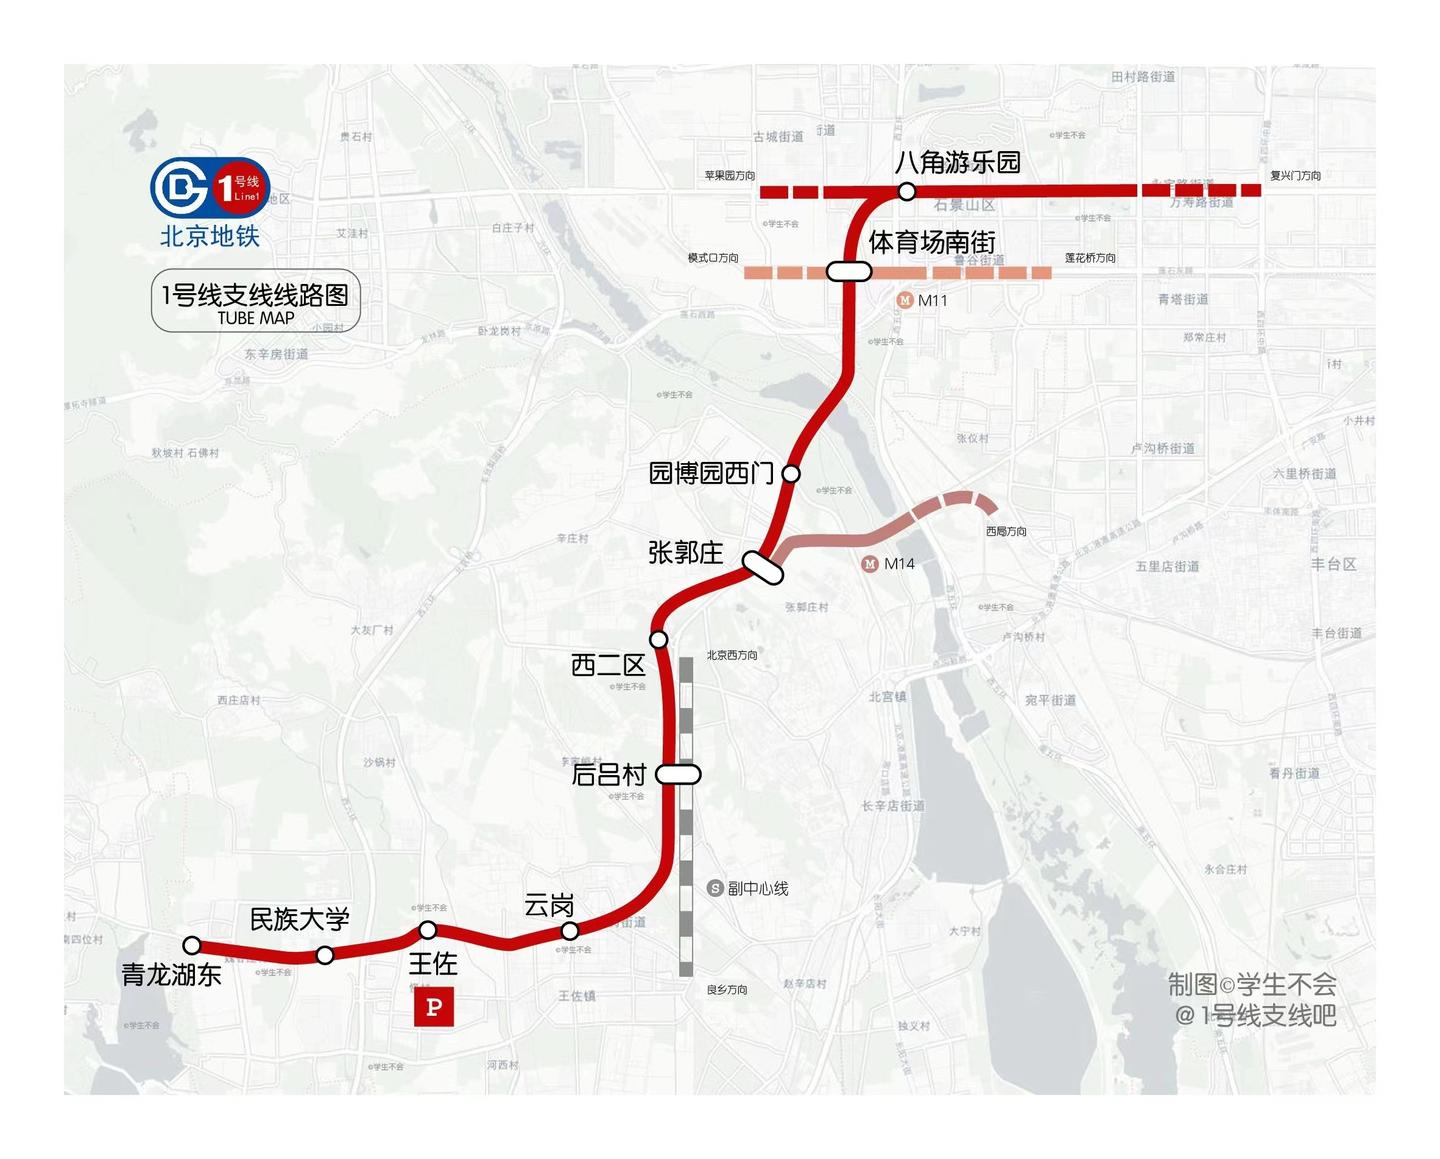 郑州地铁线路图,郑州2030年地铁规划图(5) - 伤感说说吧